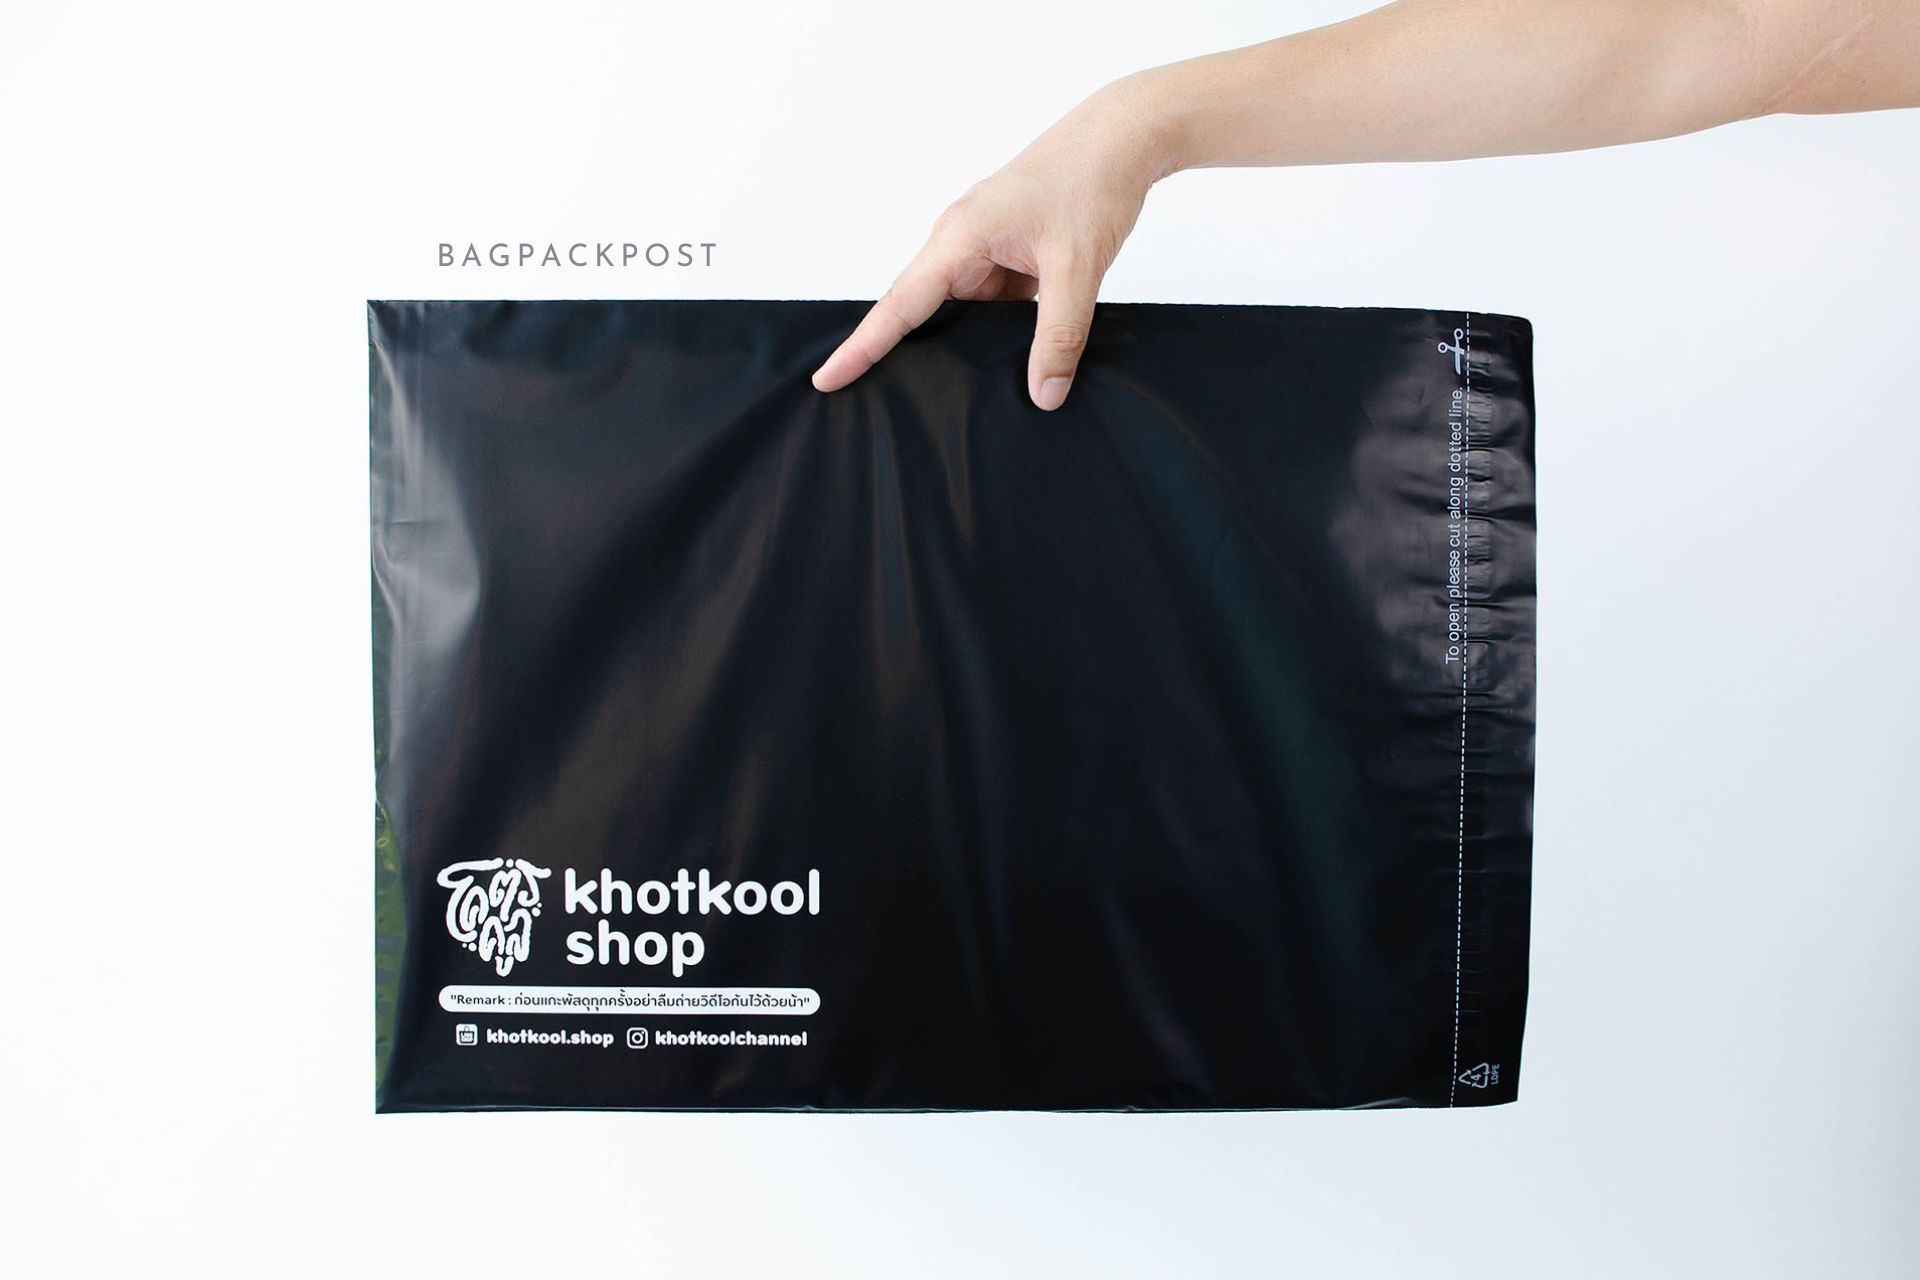 ผลิตถุงไปรษณีย์ ซองไปรษณีย์พิมพ์ลาย โคตรคูล ซองไปรษณีย์สีดำ ถุงไปรษณีย์พิมพ์ลาย 2 BagPackPost